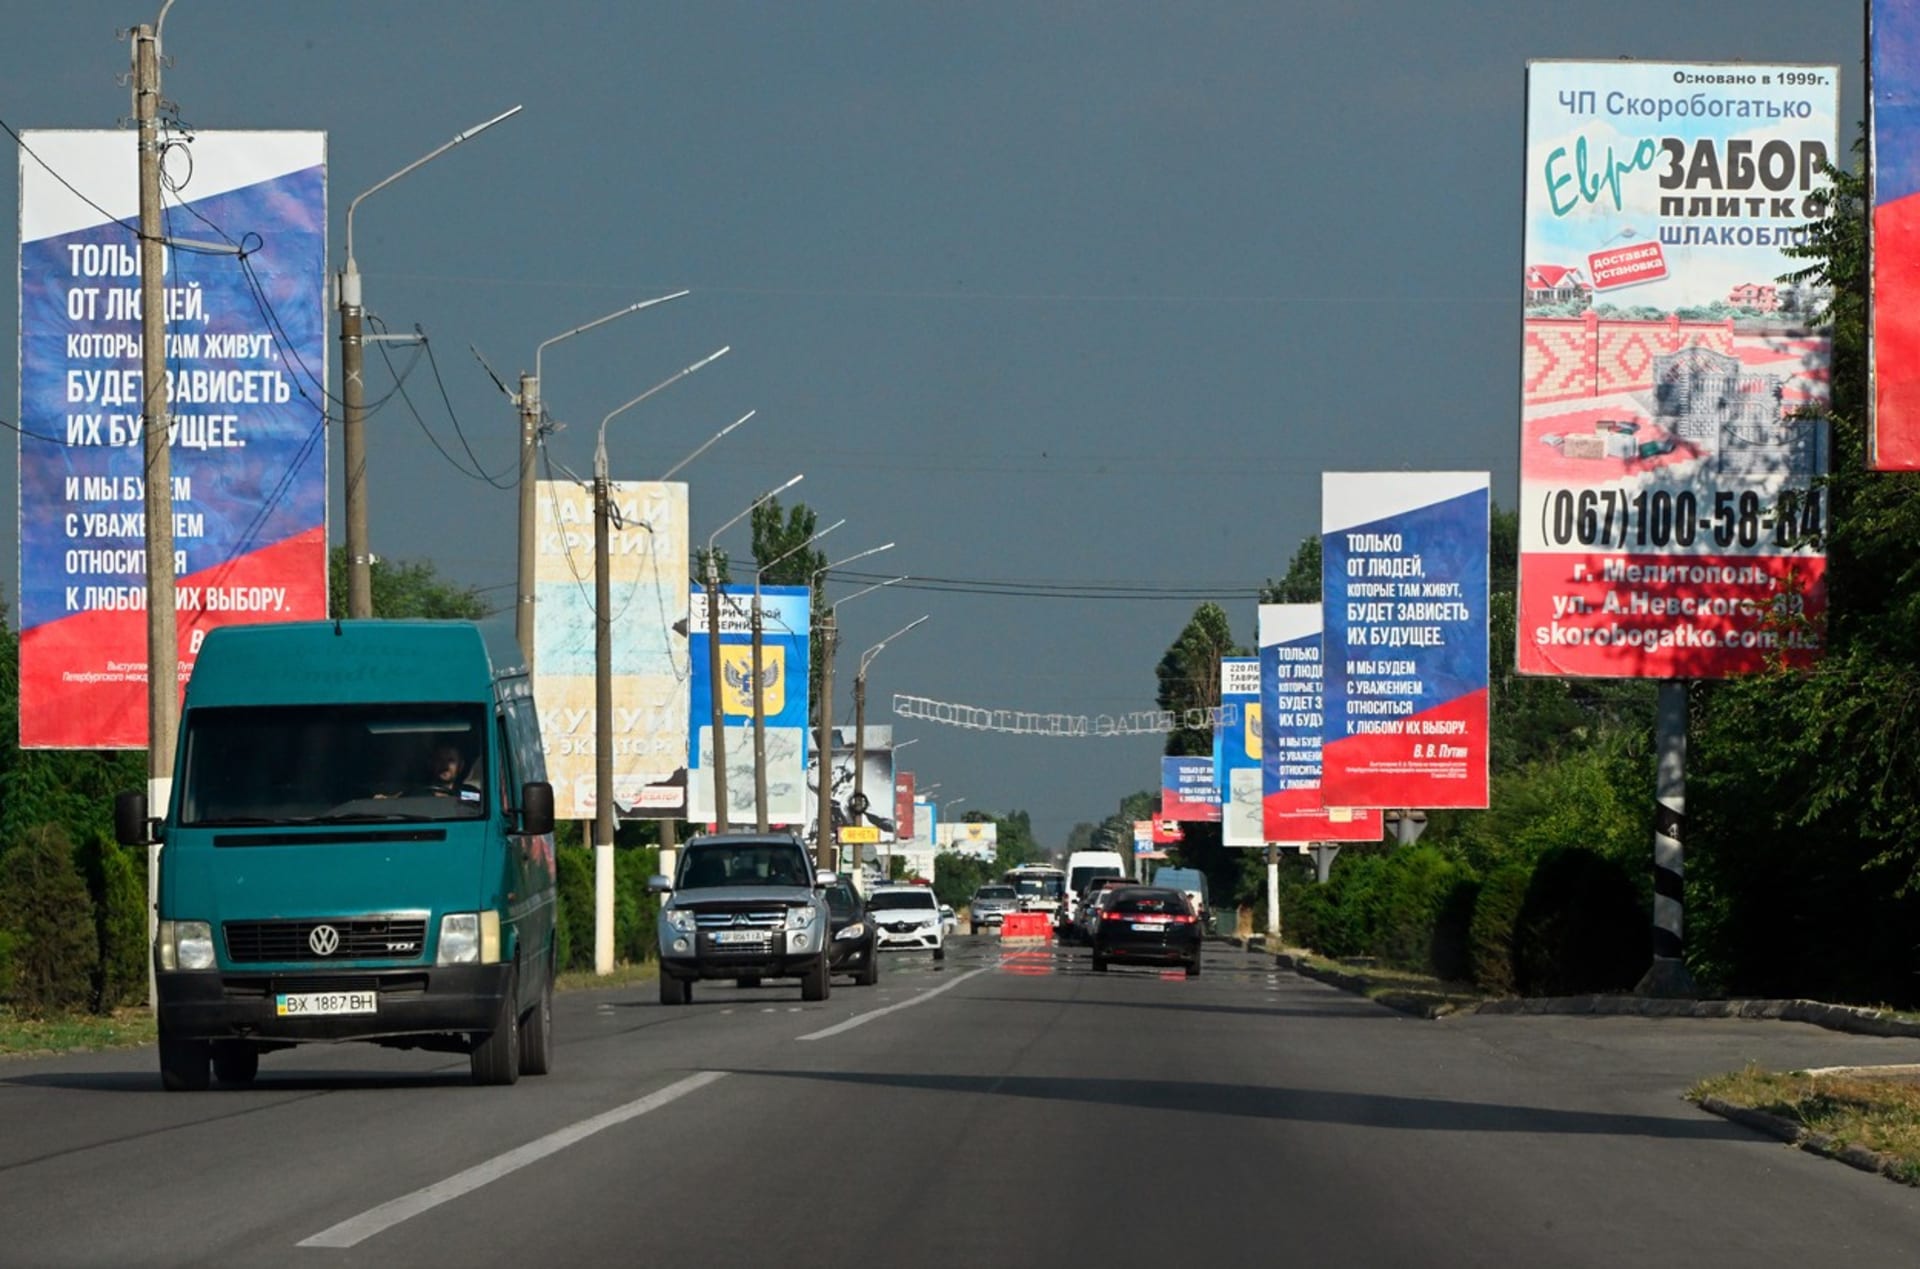 Chersonská oblast je aktuálně plná různých reklam a billboardů s ruskou propagandou.